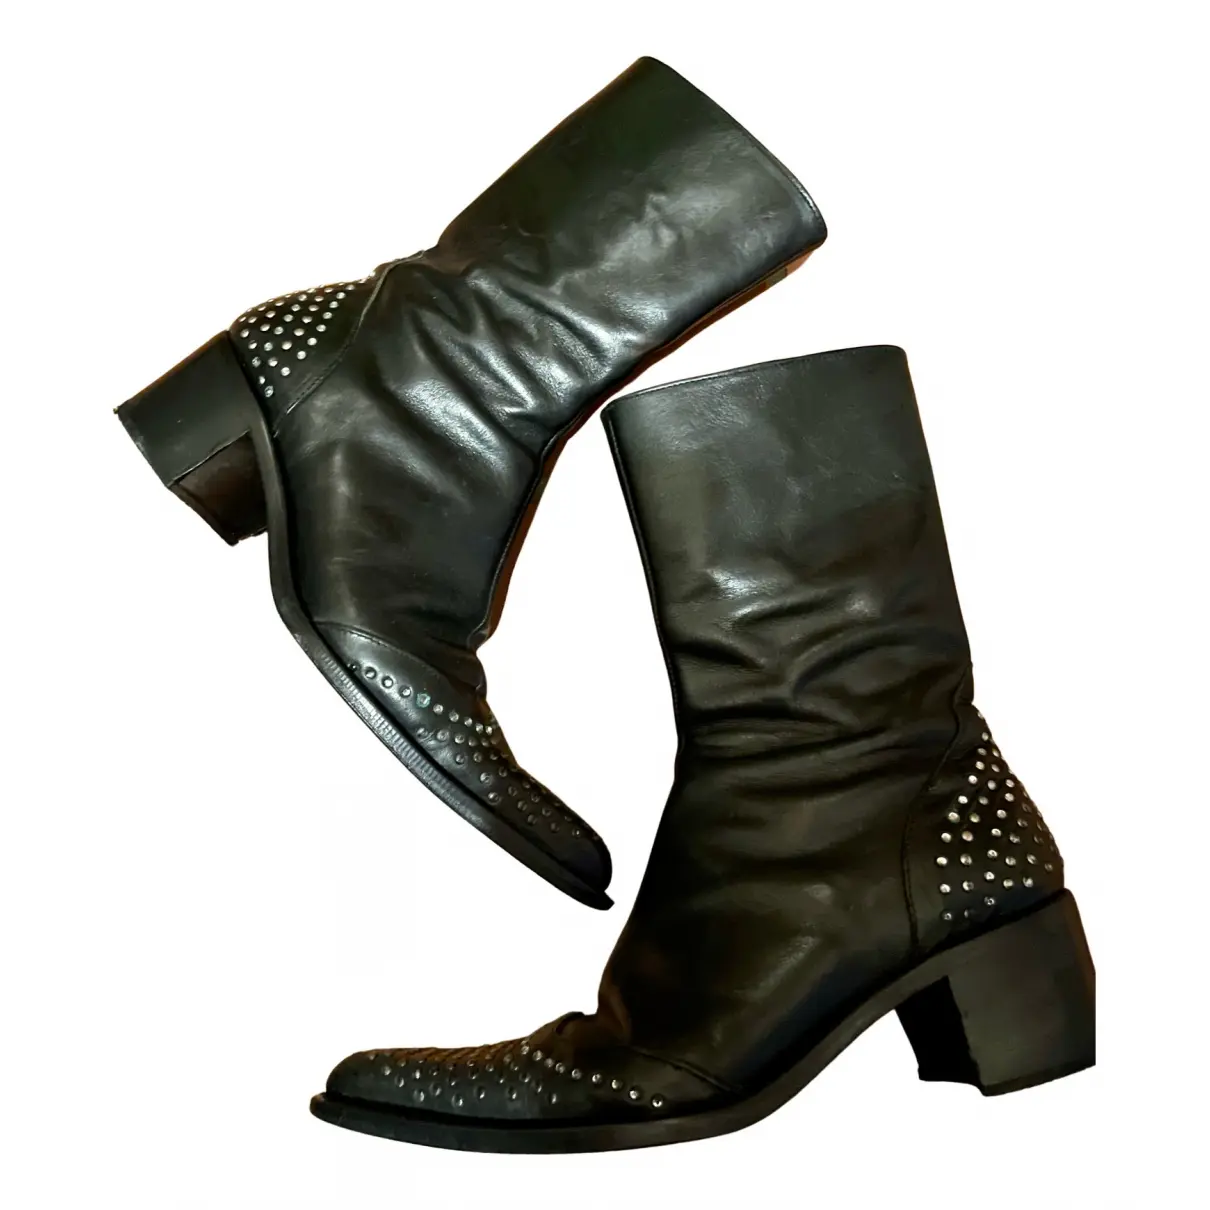 Leather western boots Black Tie Oleg Cassini